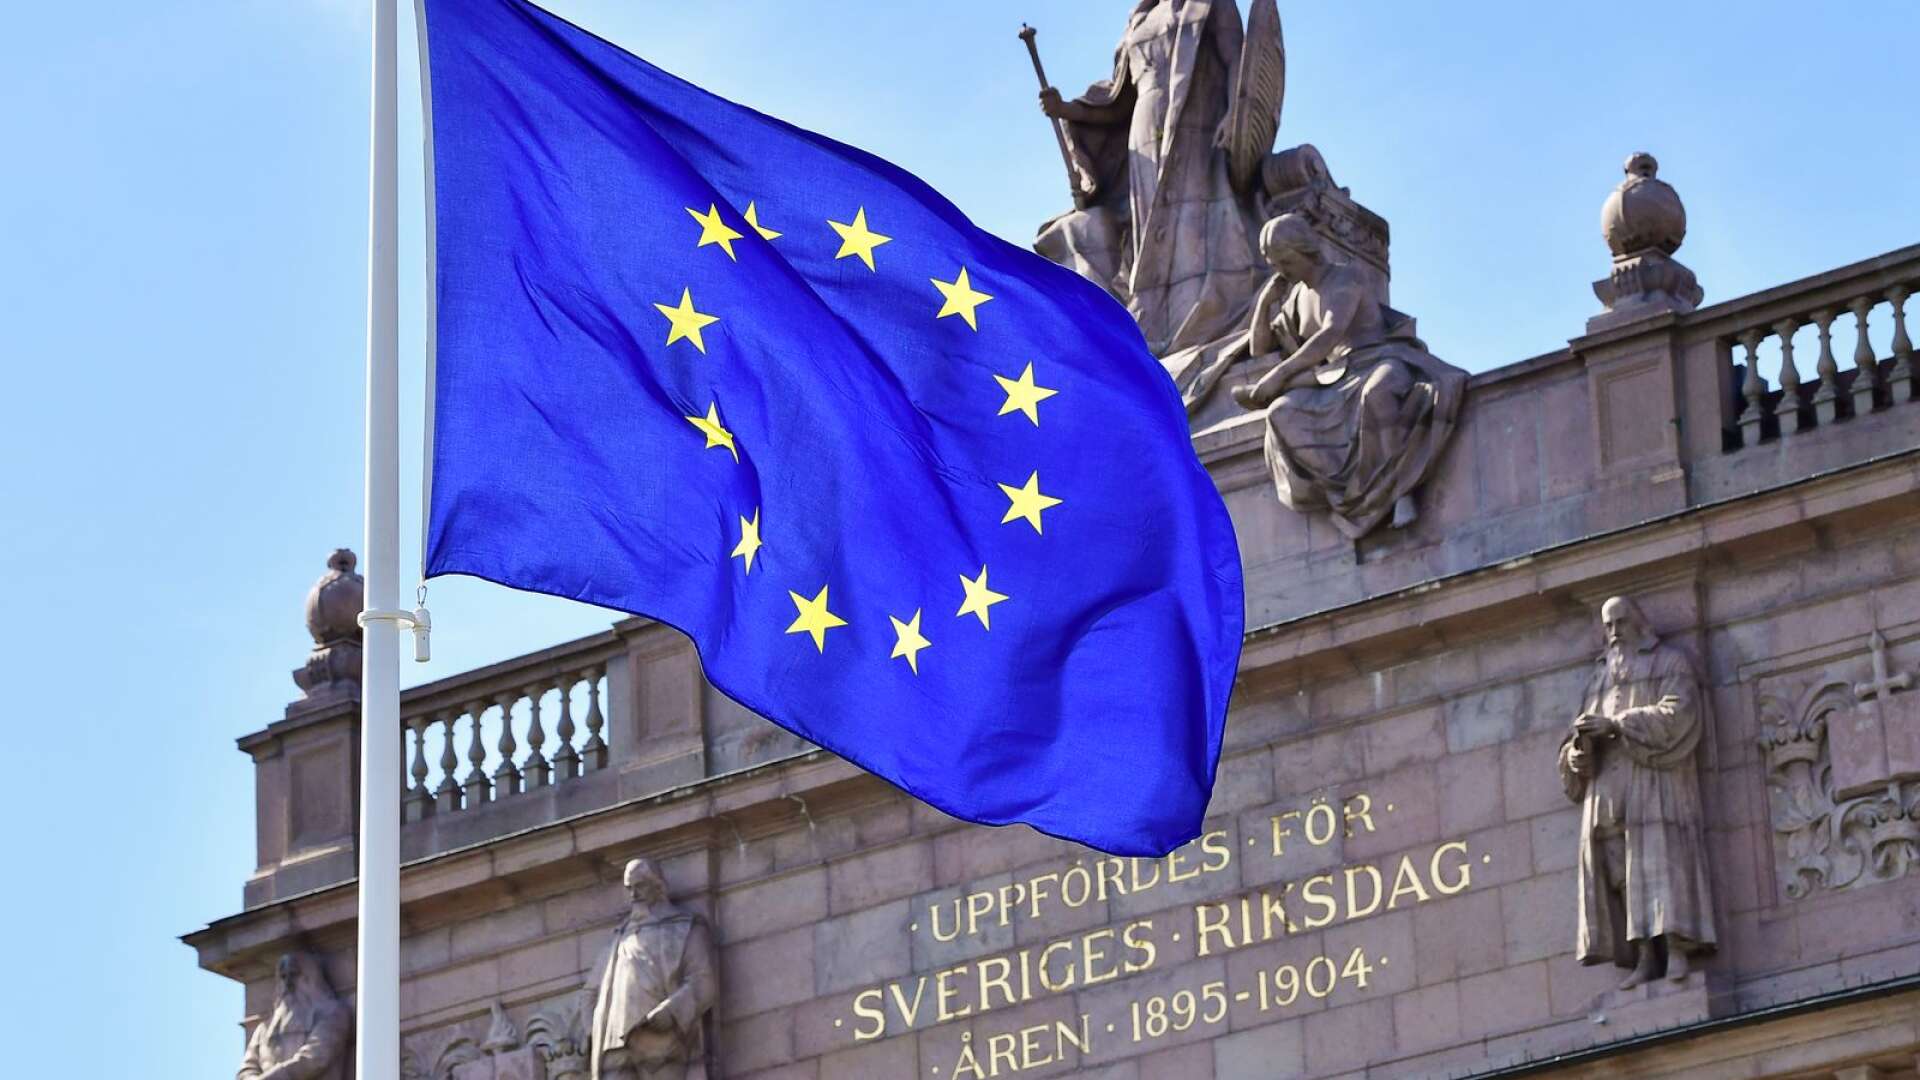 Någonting som emellertid var näst intill frånvarande i den svenska debatten var utrikes- och EU-politik, skriver Jessica Polfjärd.